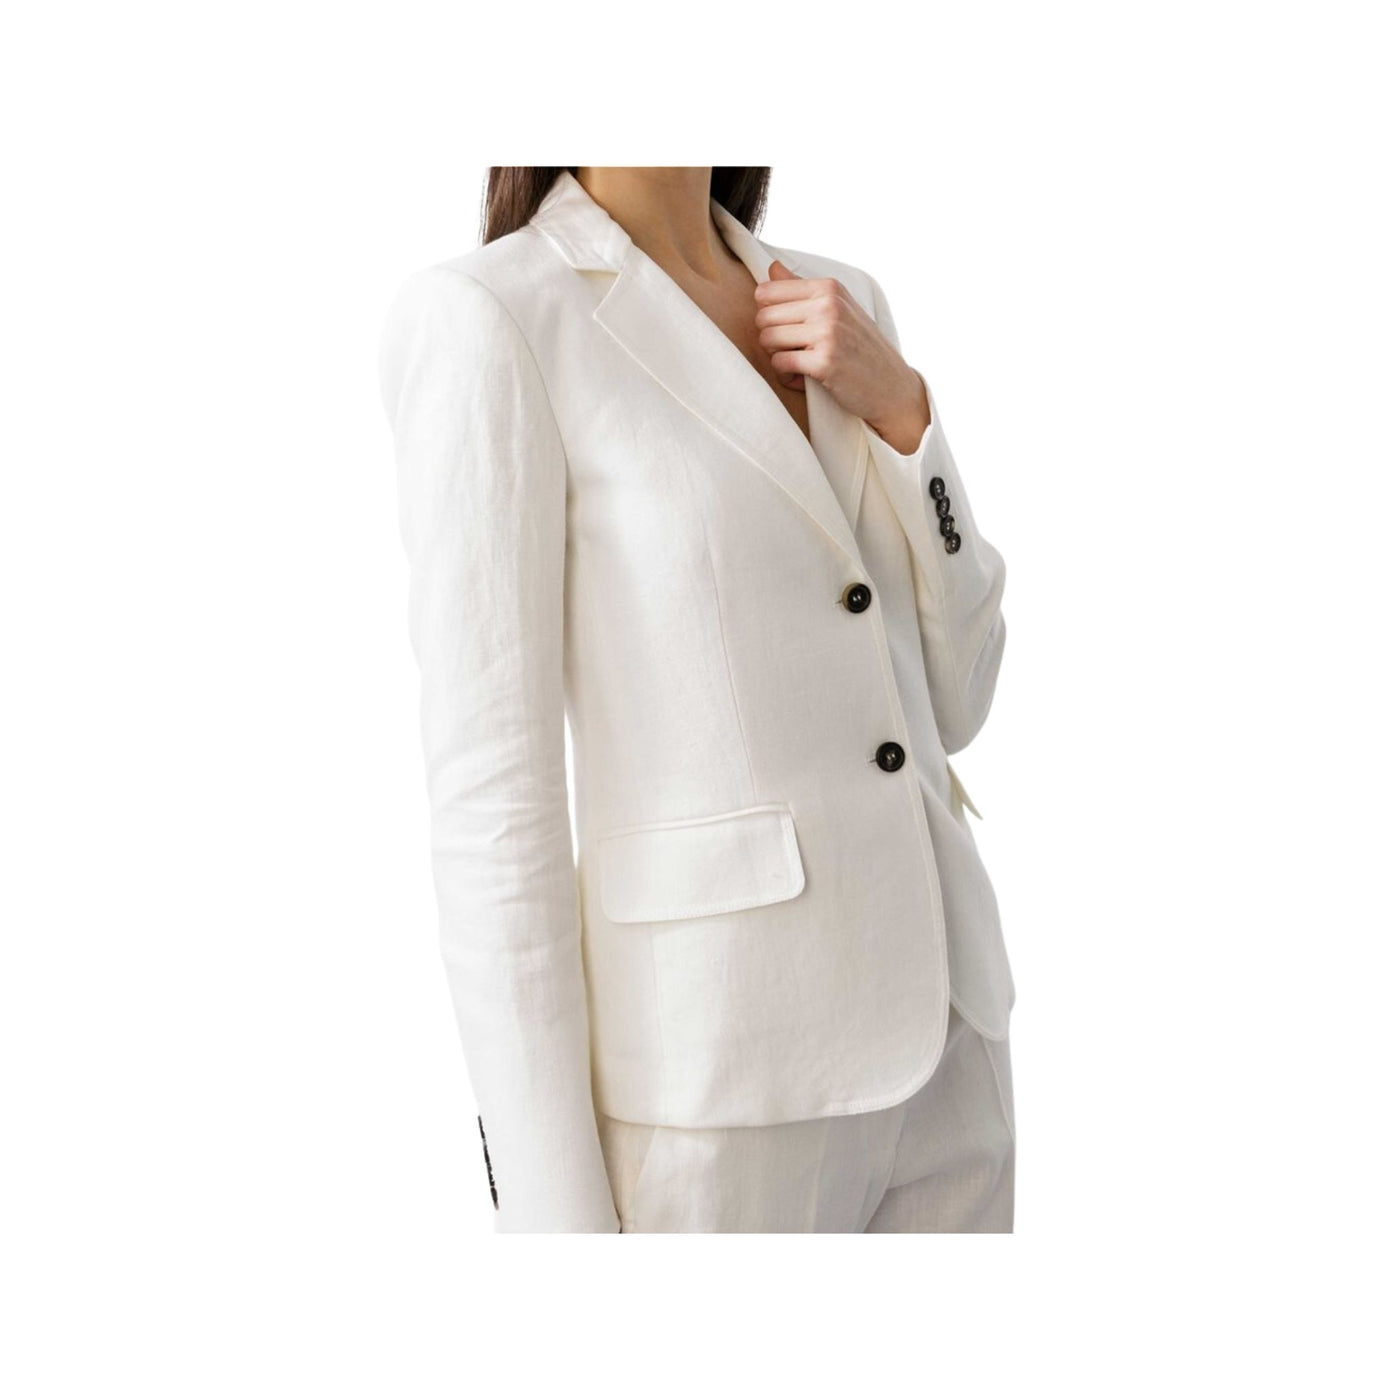 Women's jackets Solid color + black buttons 23SRJ205LI03